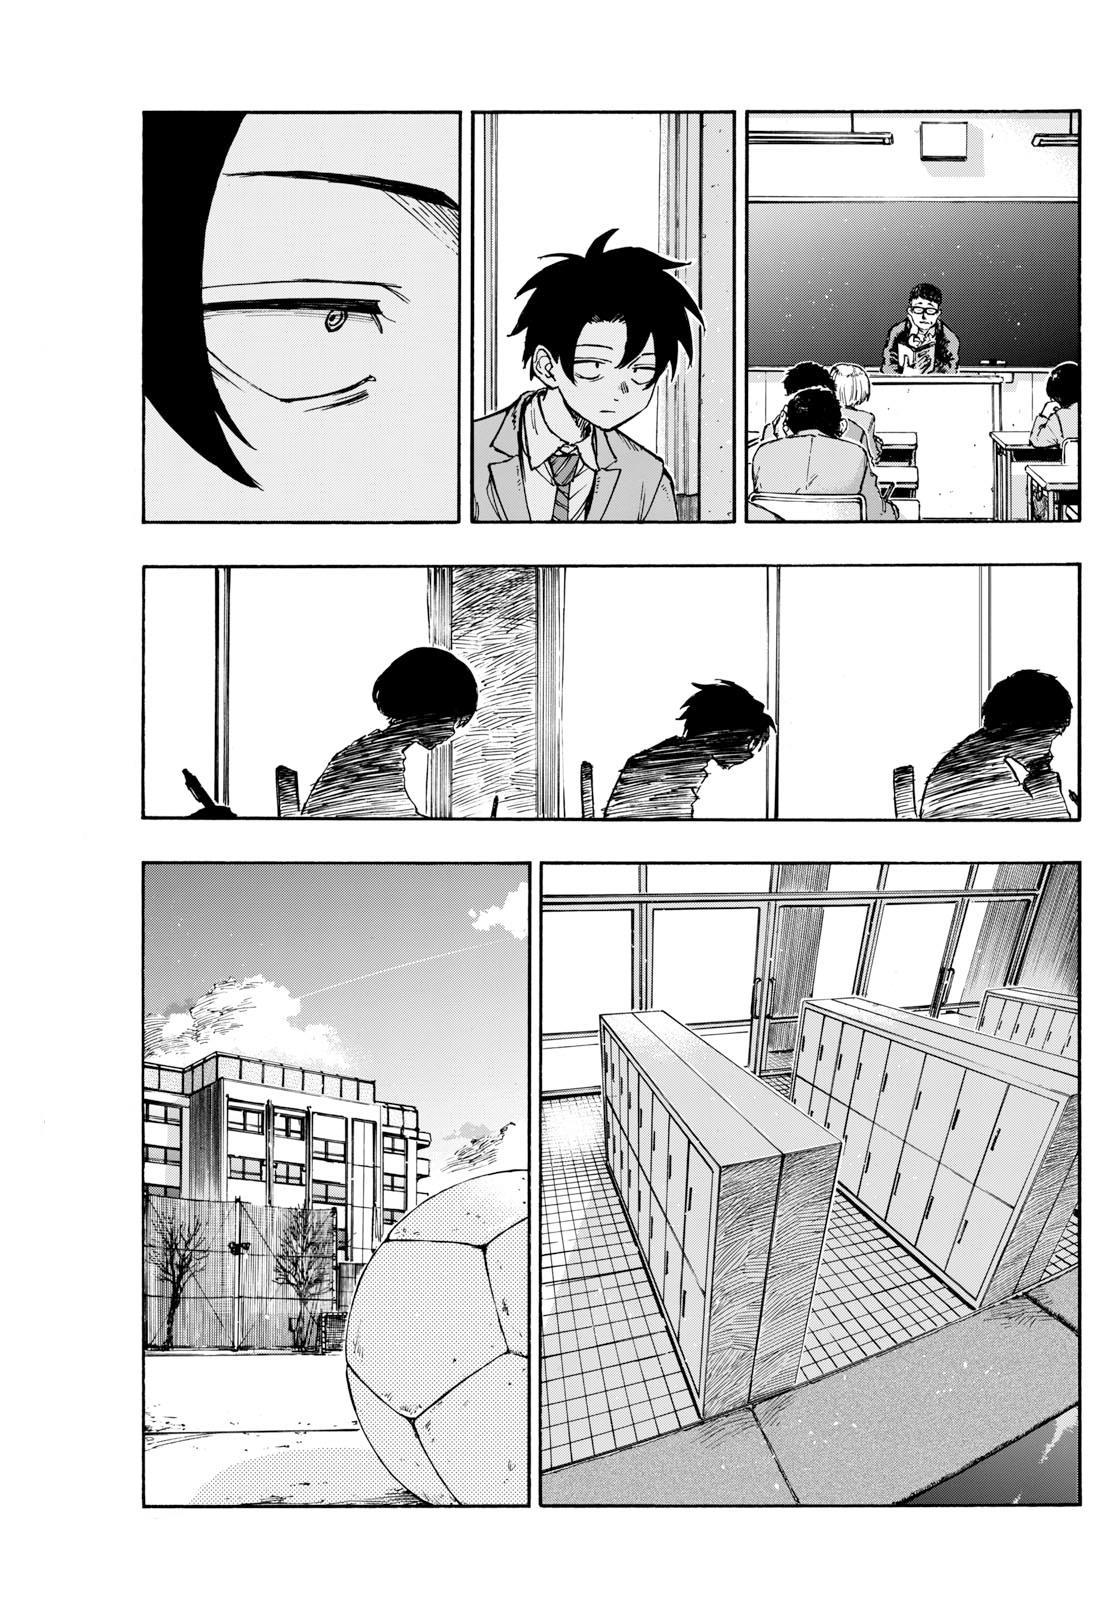 Yofukashi no Uta Ch.182 Page 6 - Mangago